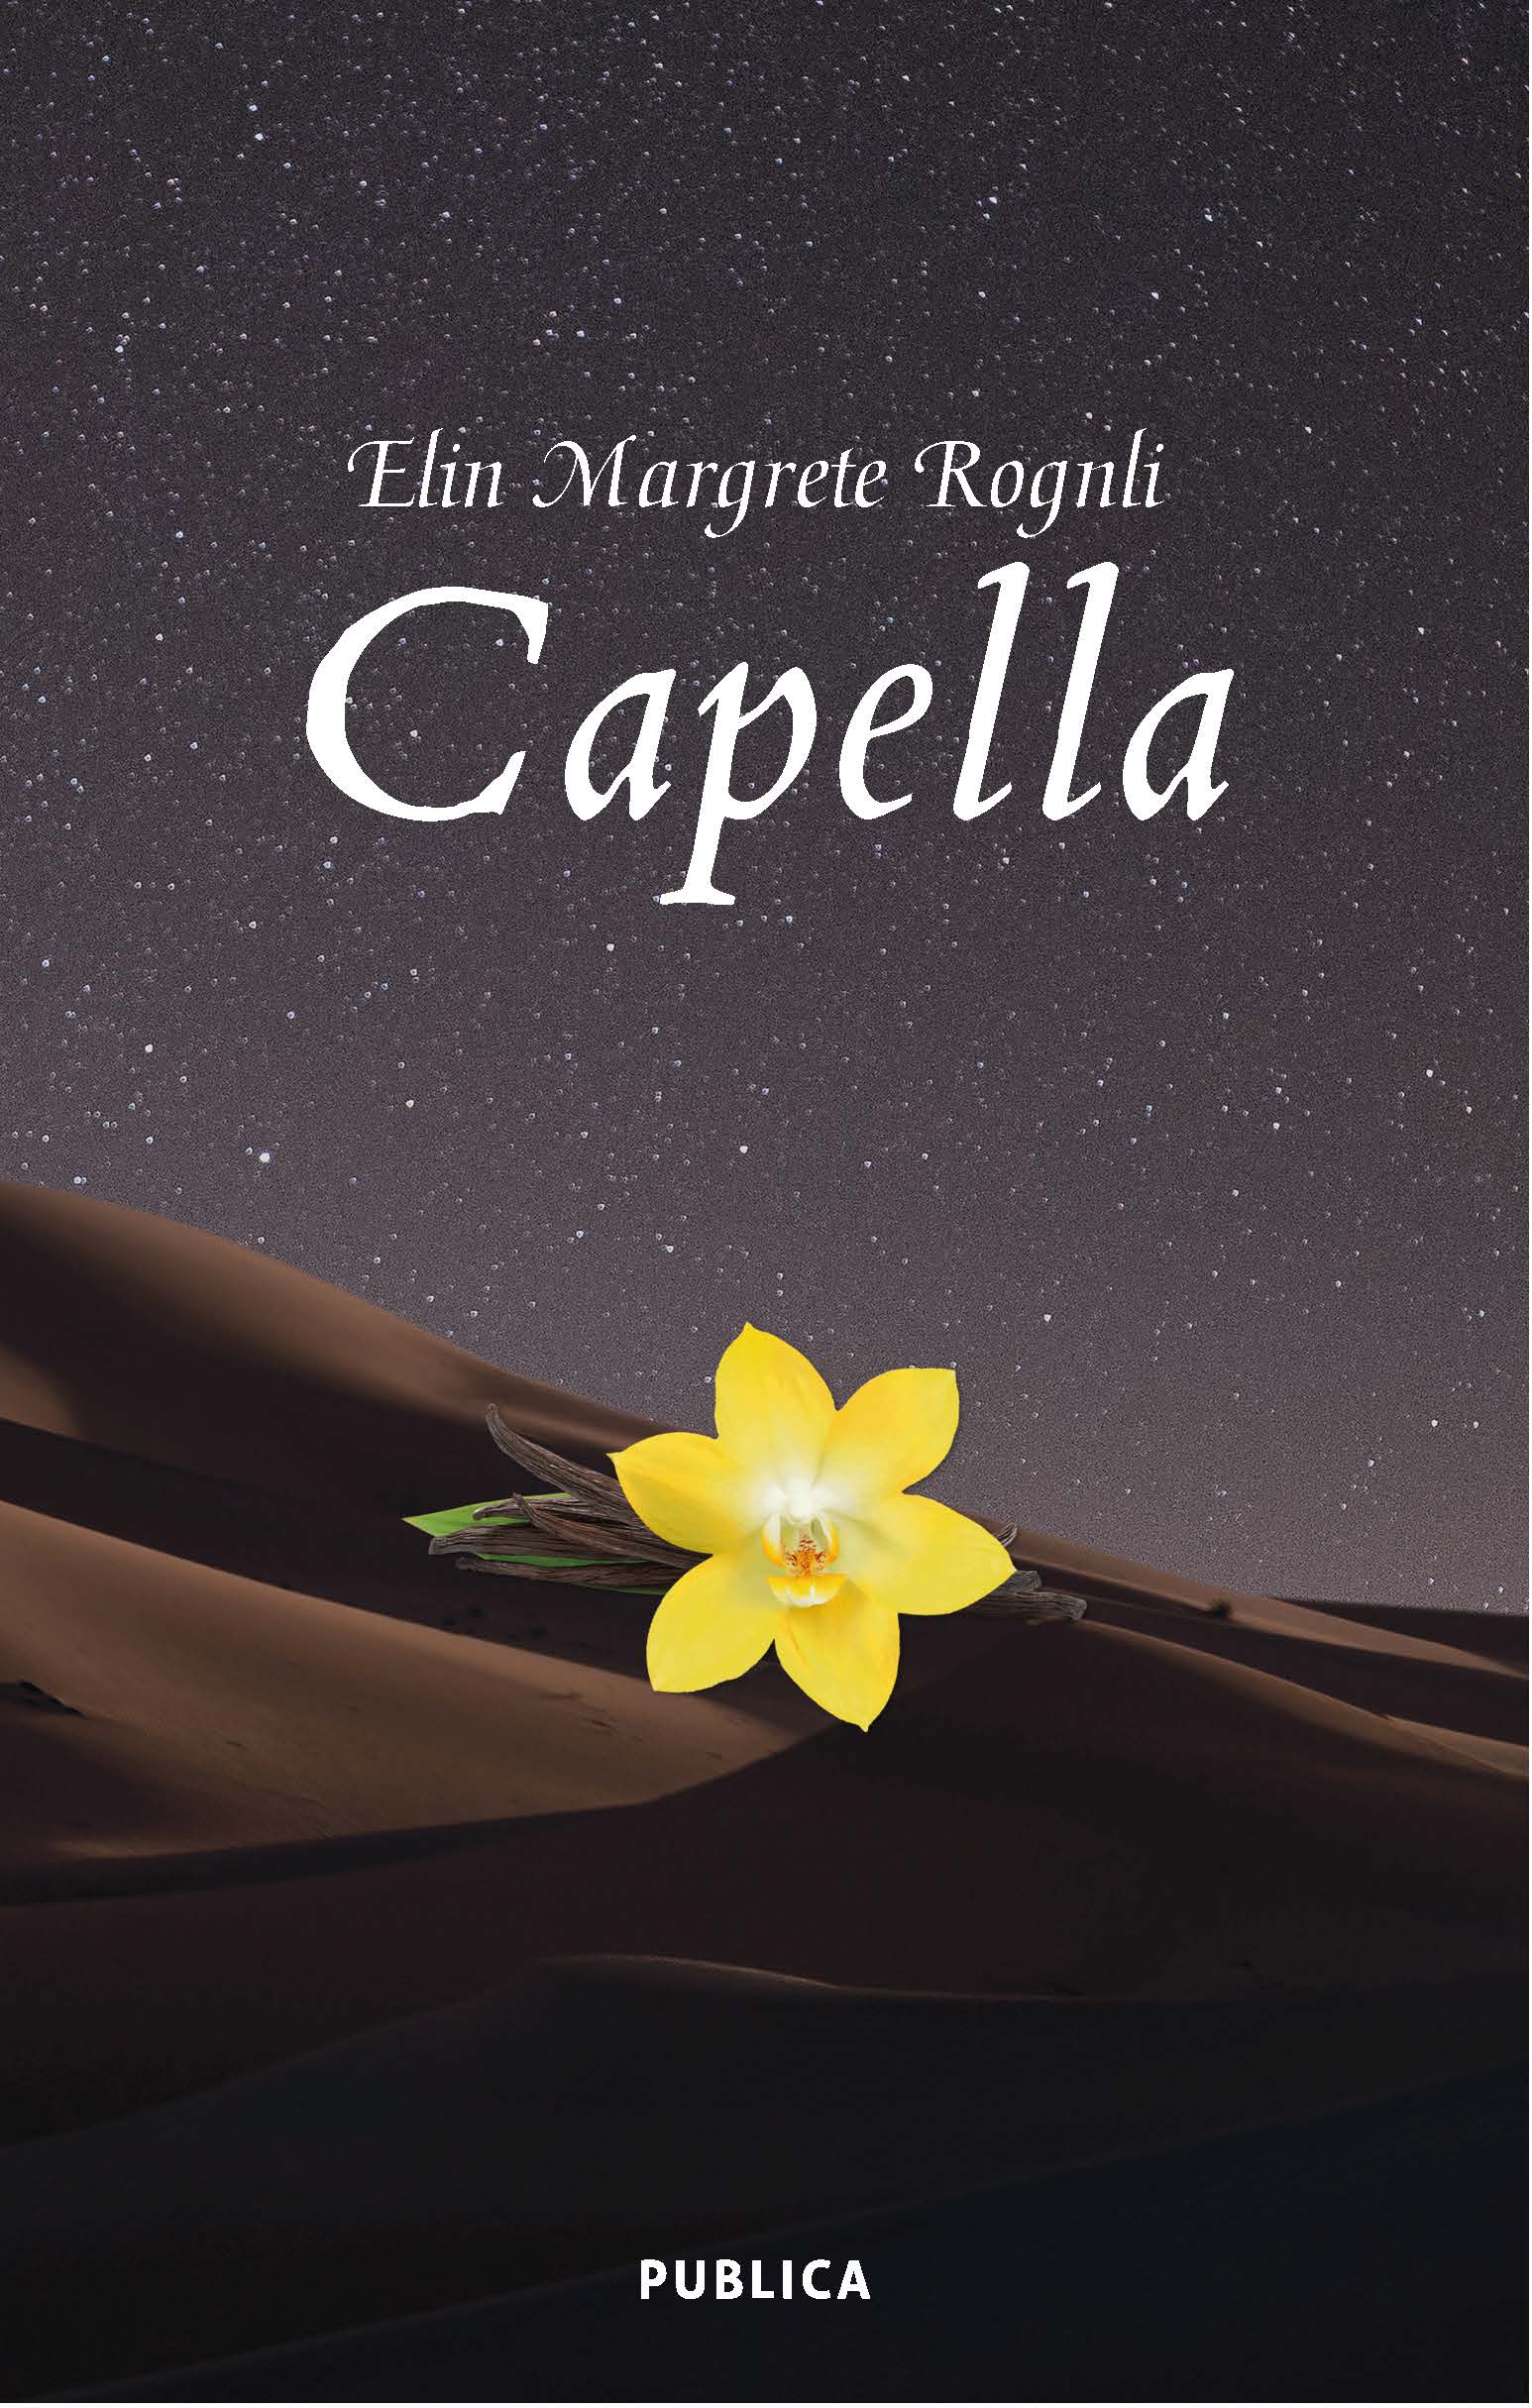 "Capella"